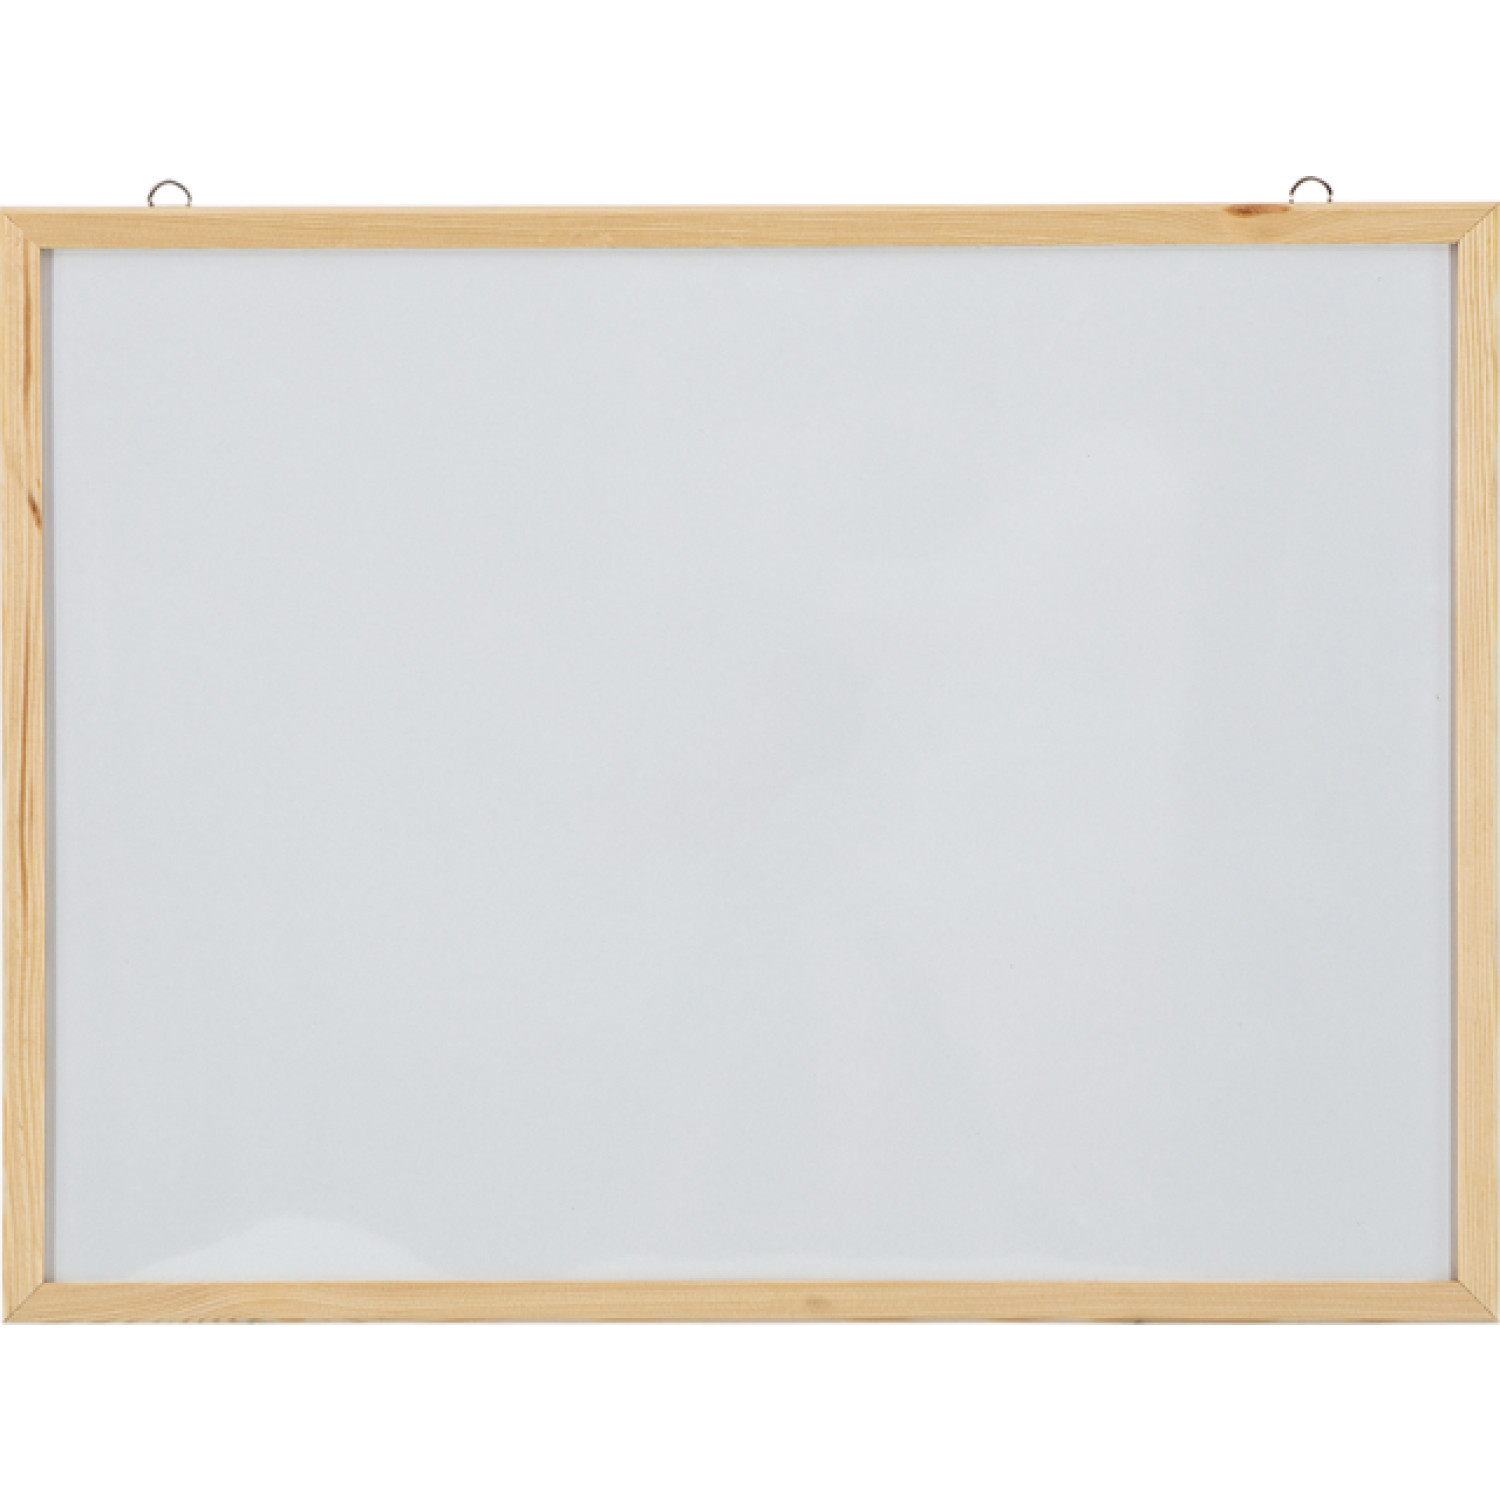 Бяла немагнитна дъска Interpano, 60х90 см., с дървена рамка